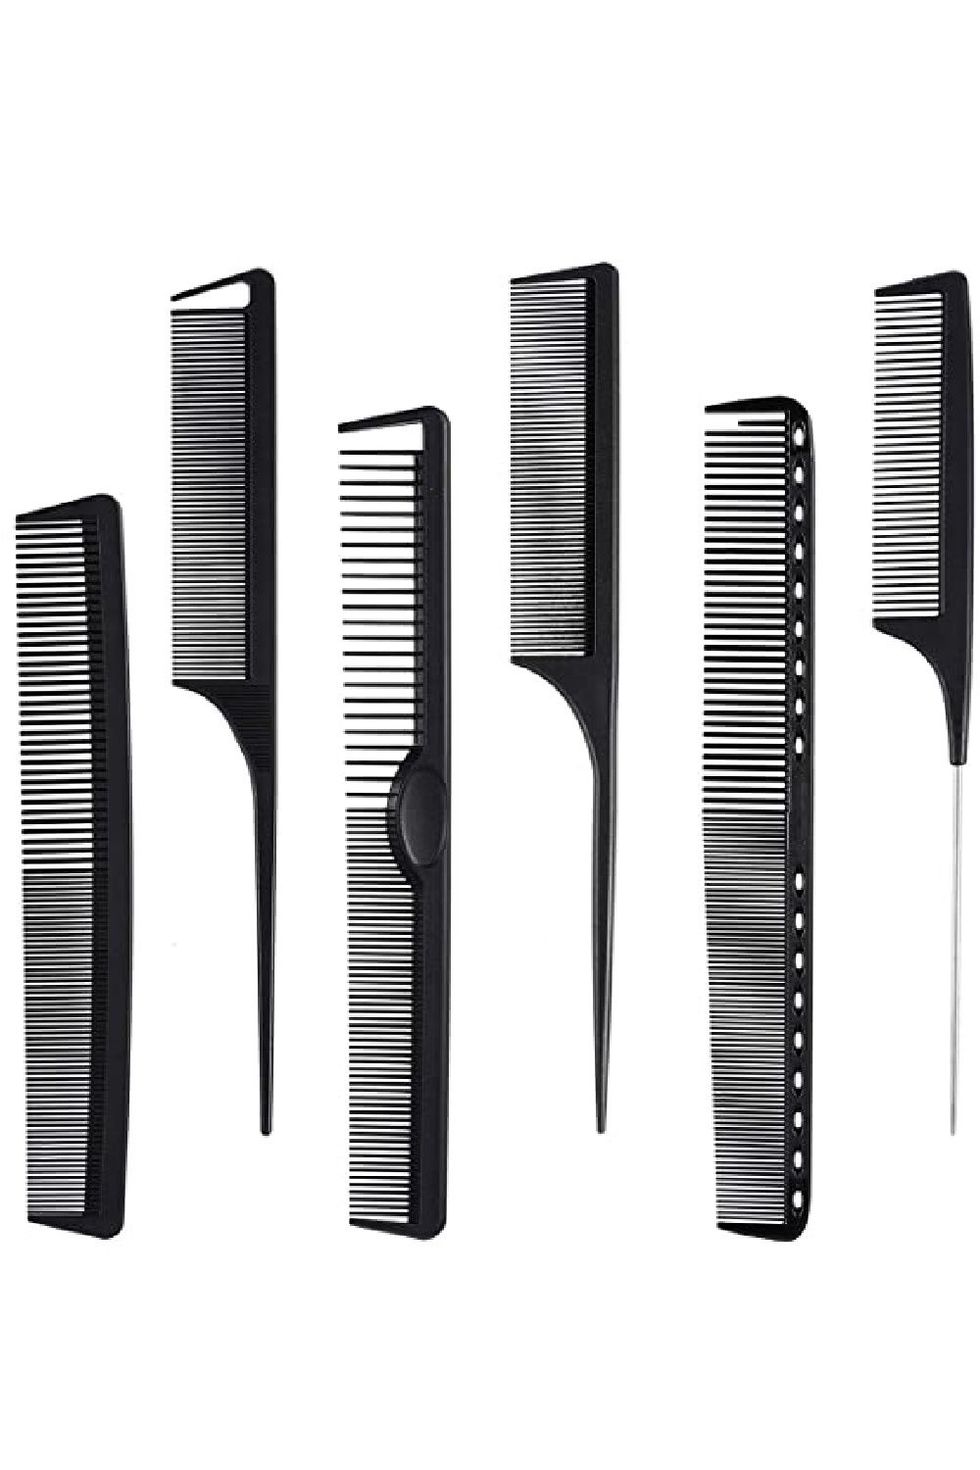 MODENGKONGJIAN Carbon Fiber Hair Combs Set